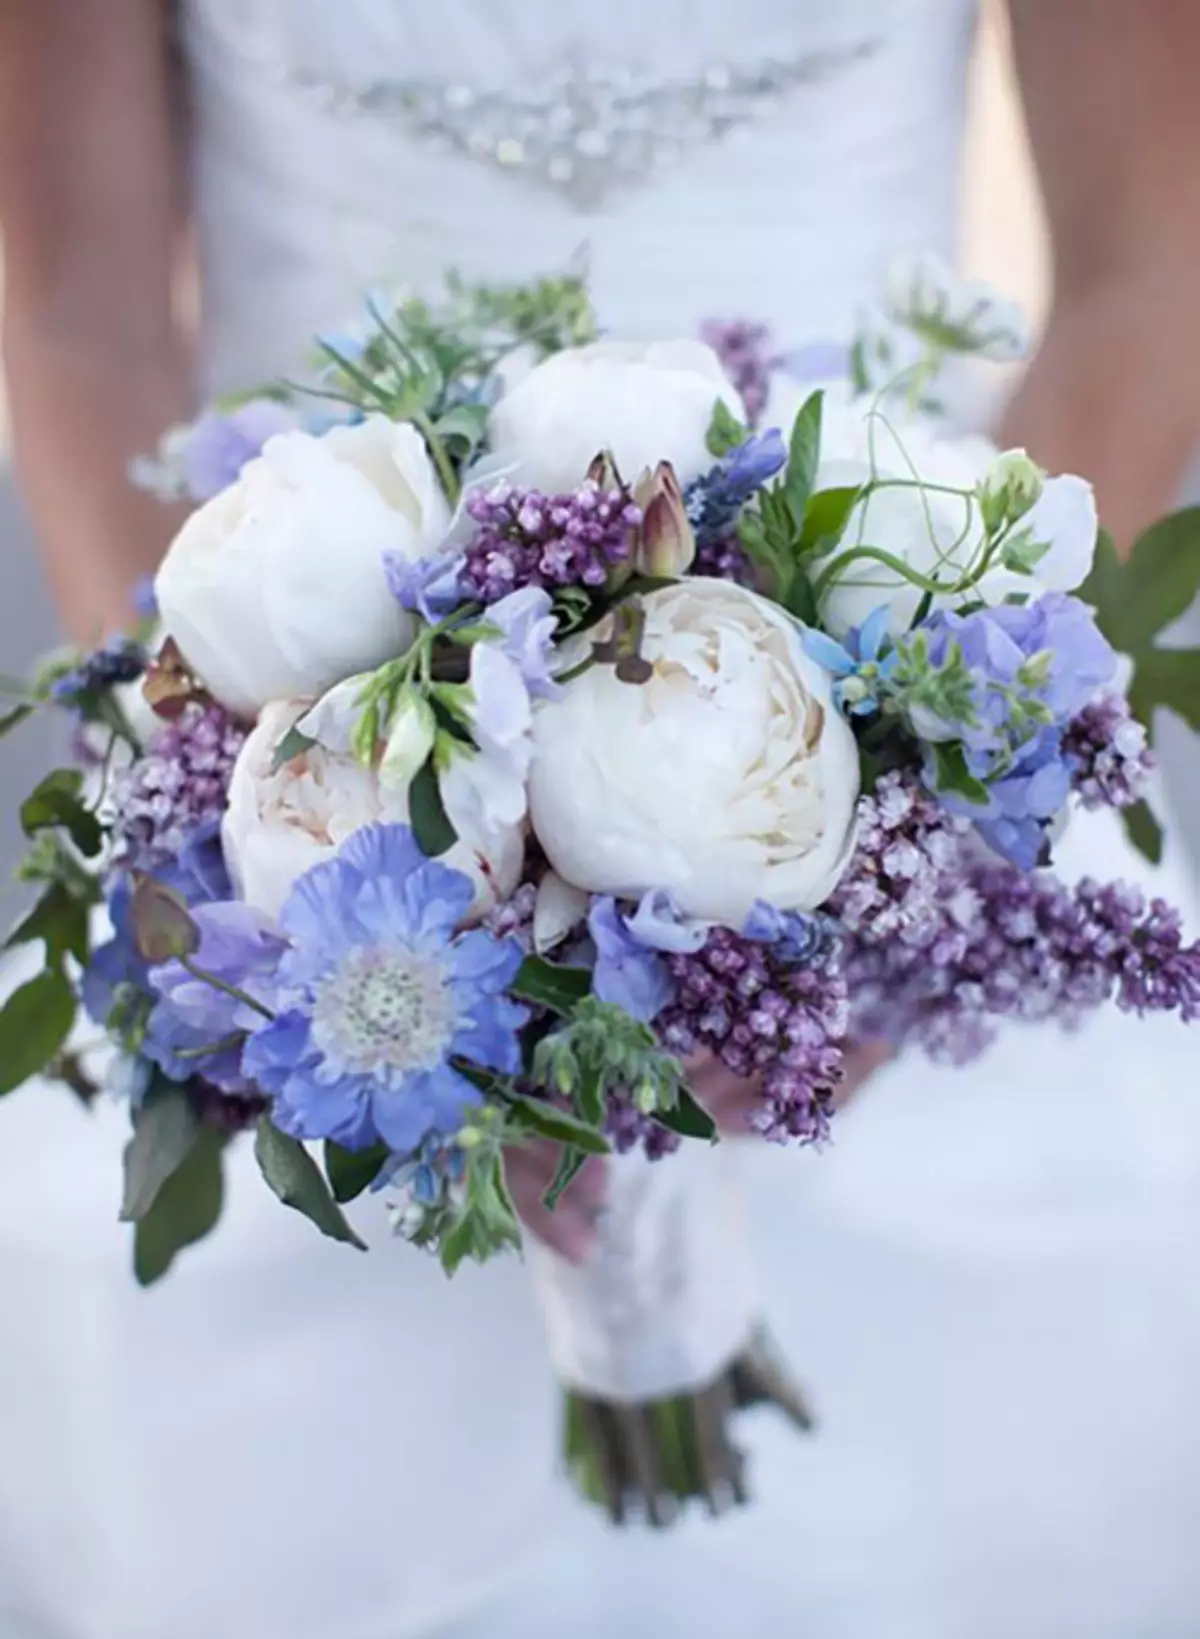 Vestuvių peonijų puokštė (108 nuotraukos): deriniai su baltais vandeniu ir raudonaisiais telefonu, bordo, alyvinės ir violetinės gėlės deriniai vestuvių puokštėje 8013_102